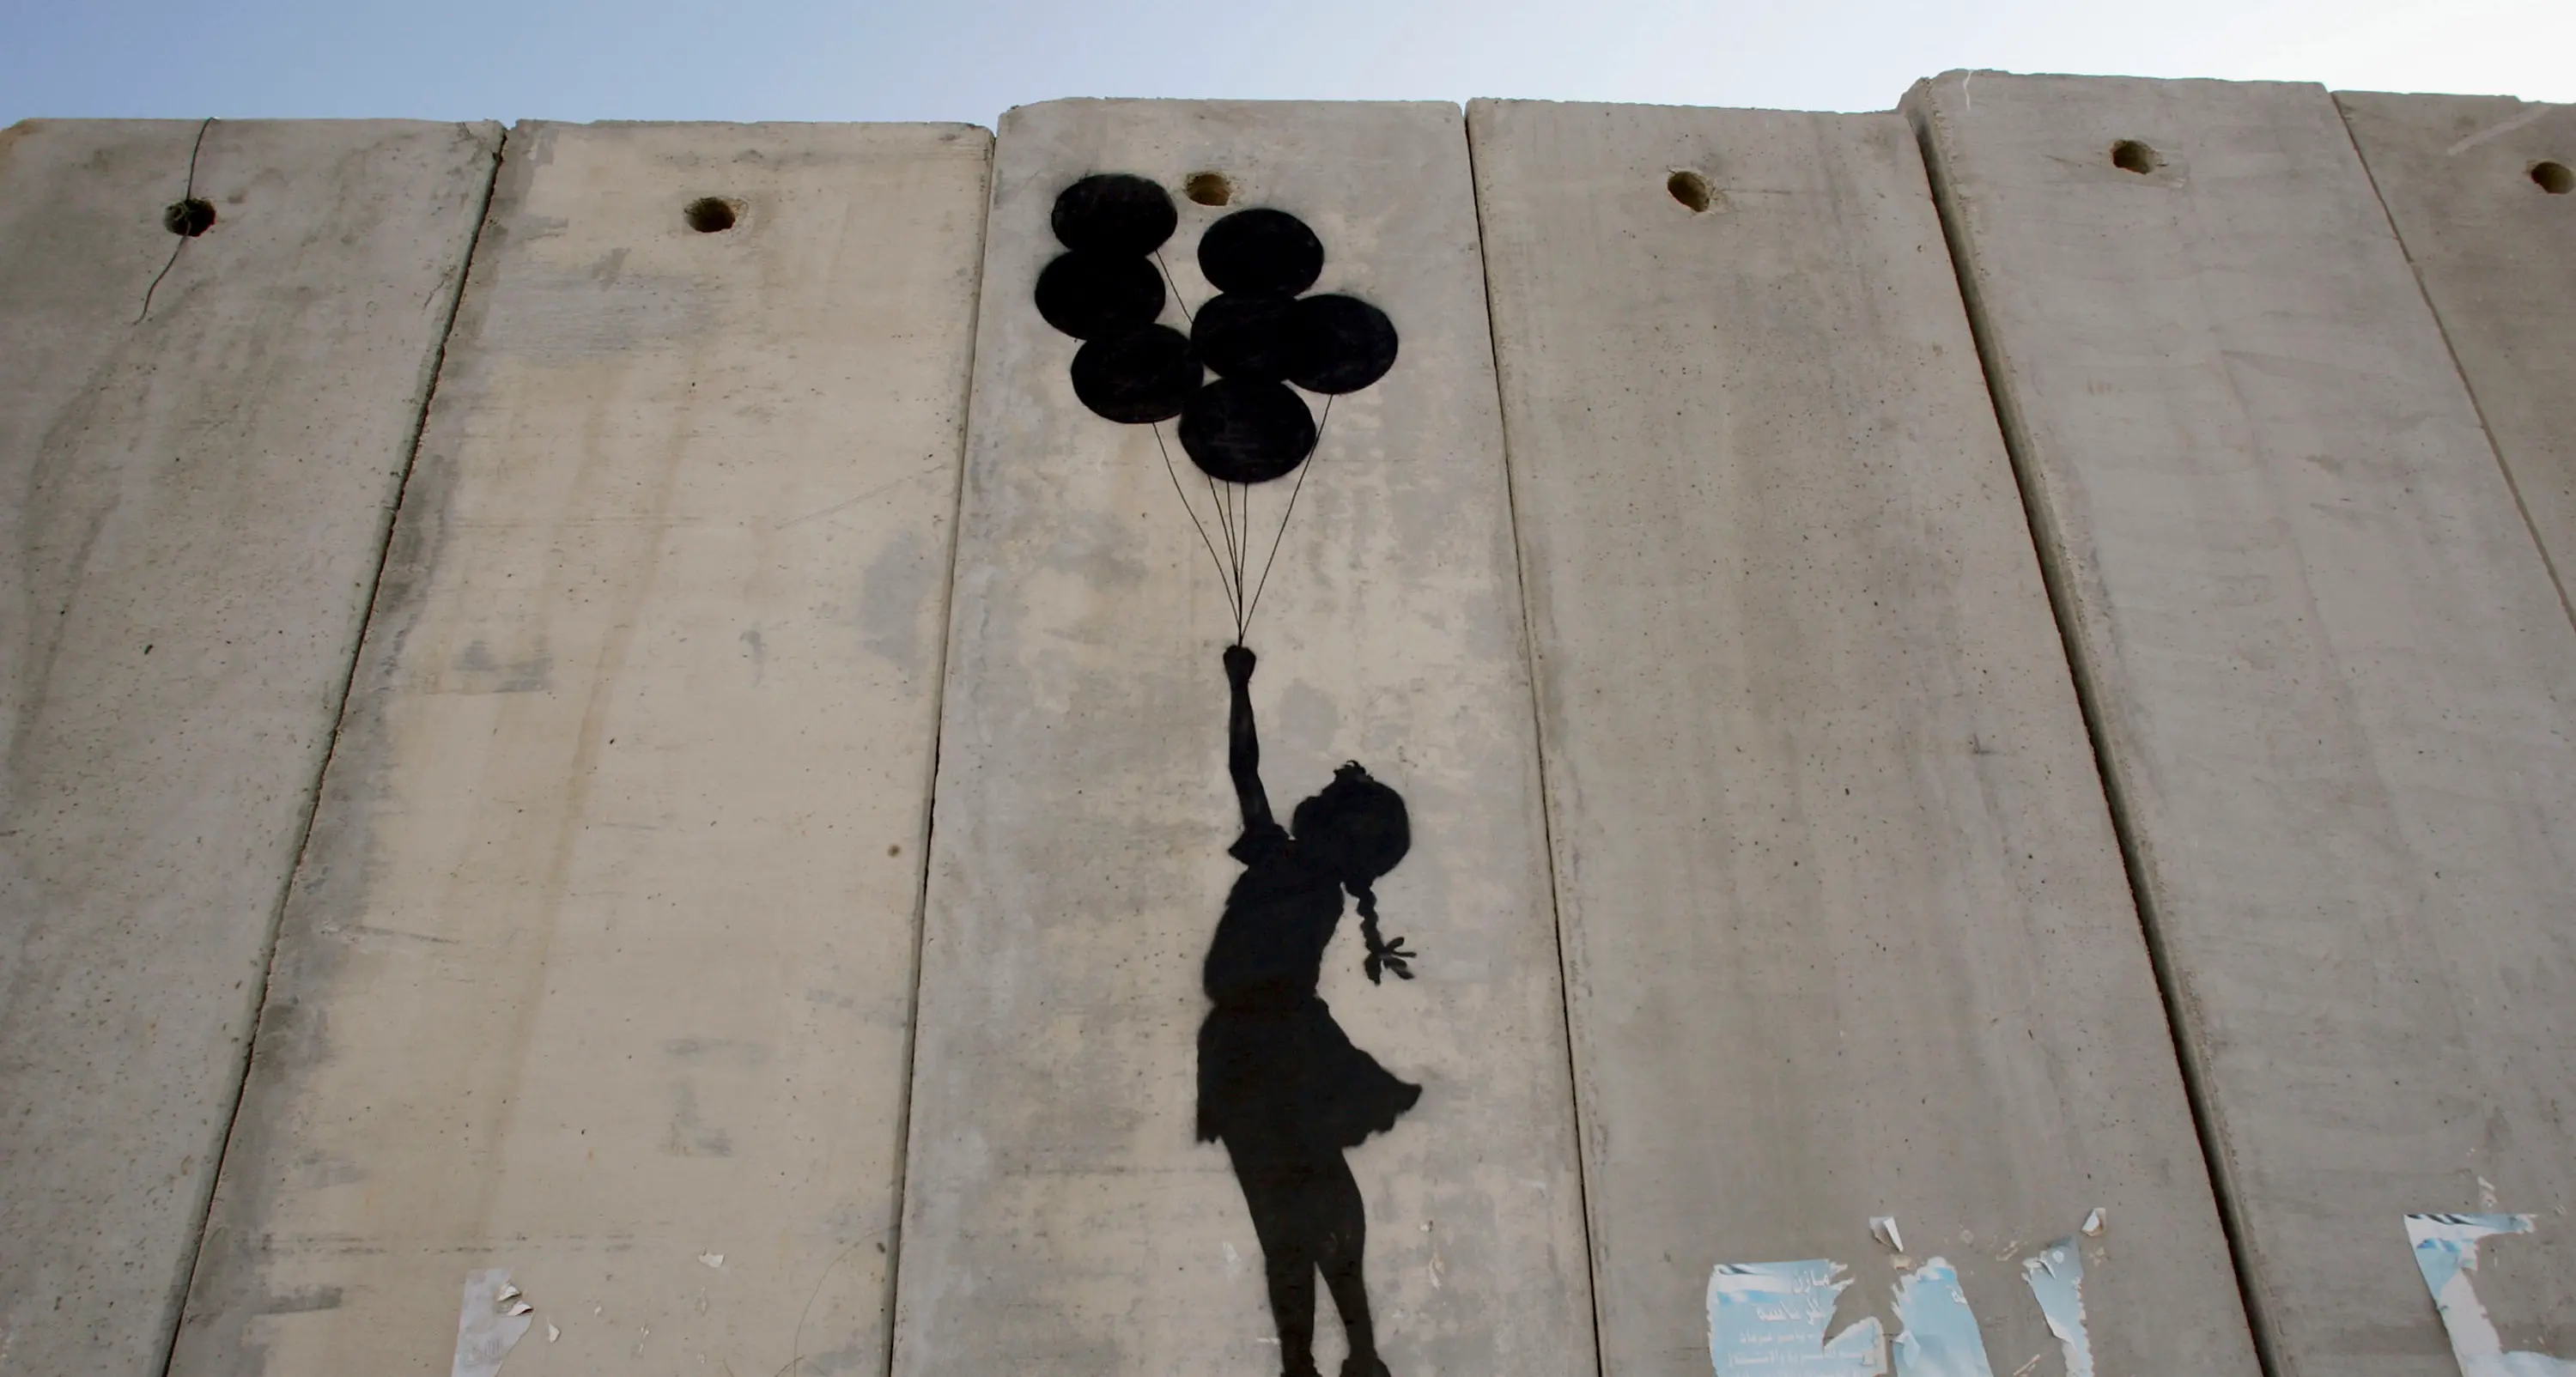 Banksy - L'arte della ribellione